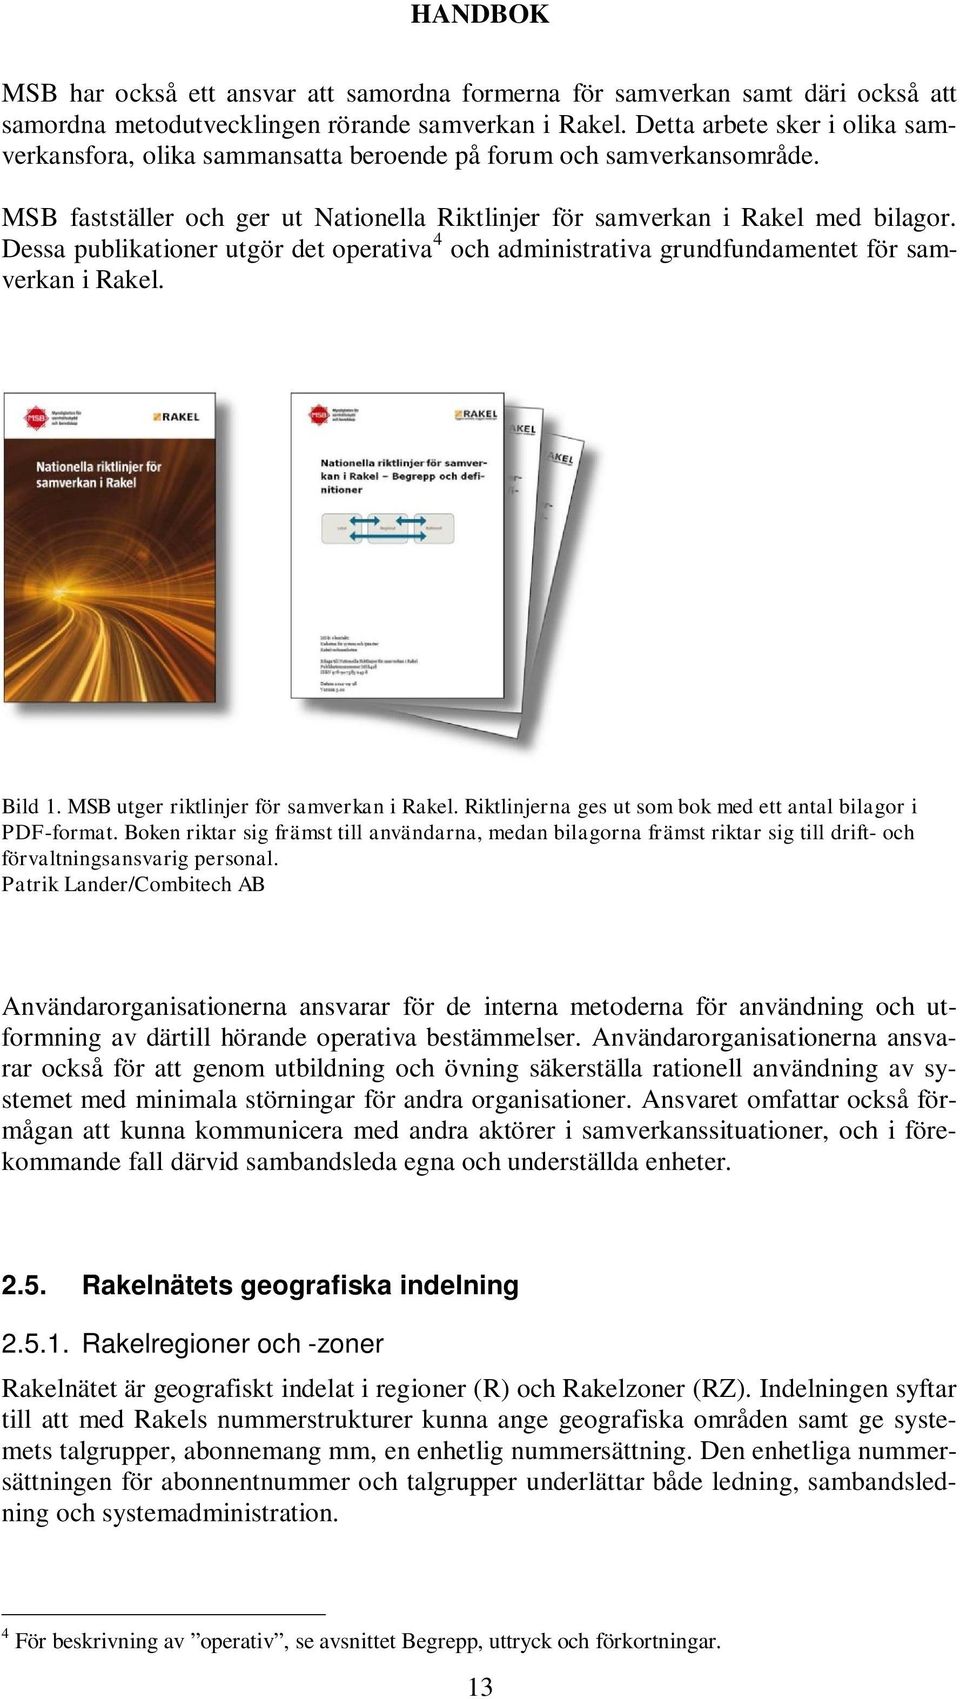 Dessa publikationer utgör det operativa 4 och administrativa grundfundamentet för samverkan i Rakel. Bild 1. MSB utger riktlinjer för samverkan i Rakel.